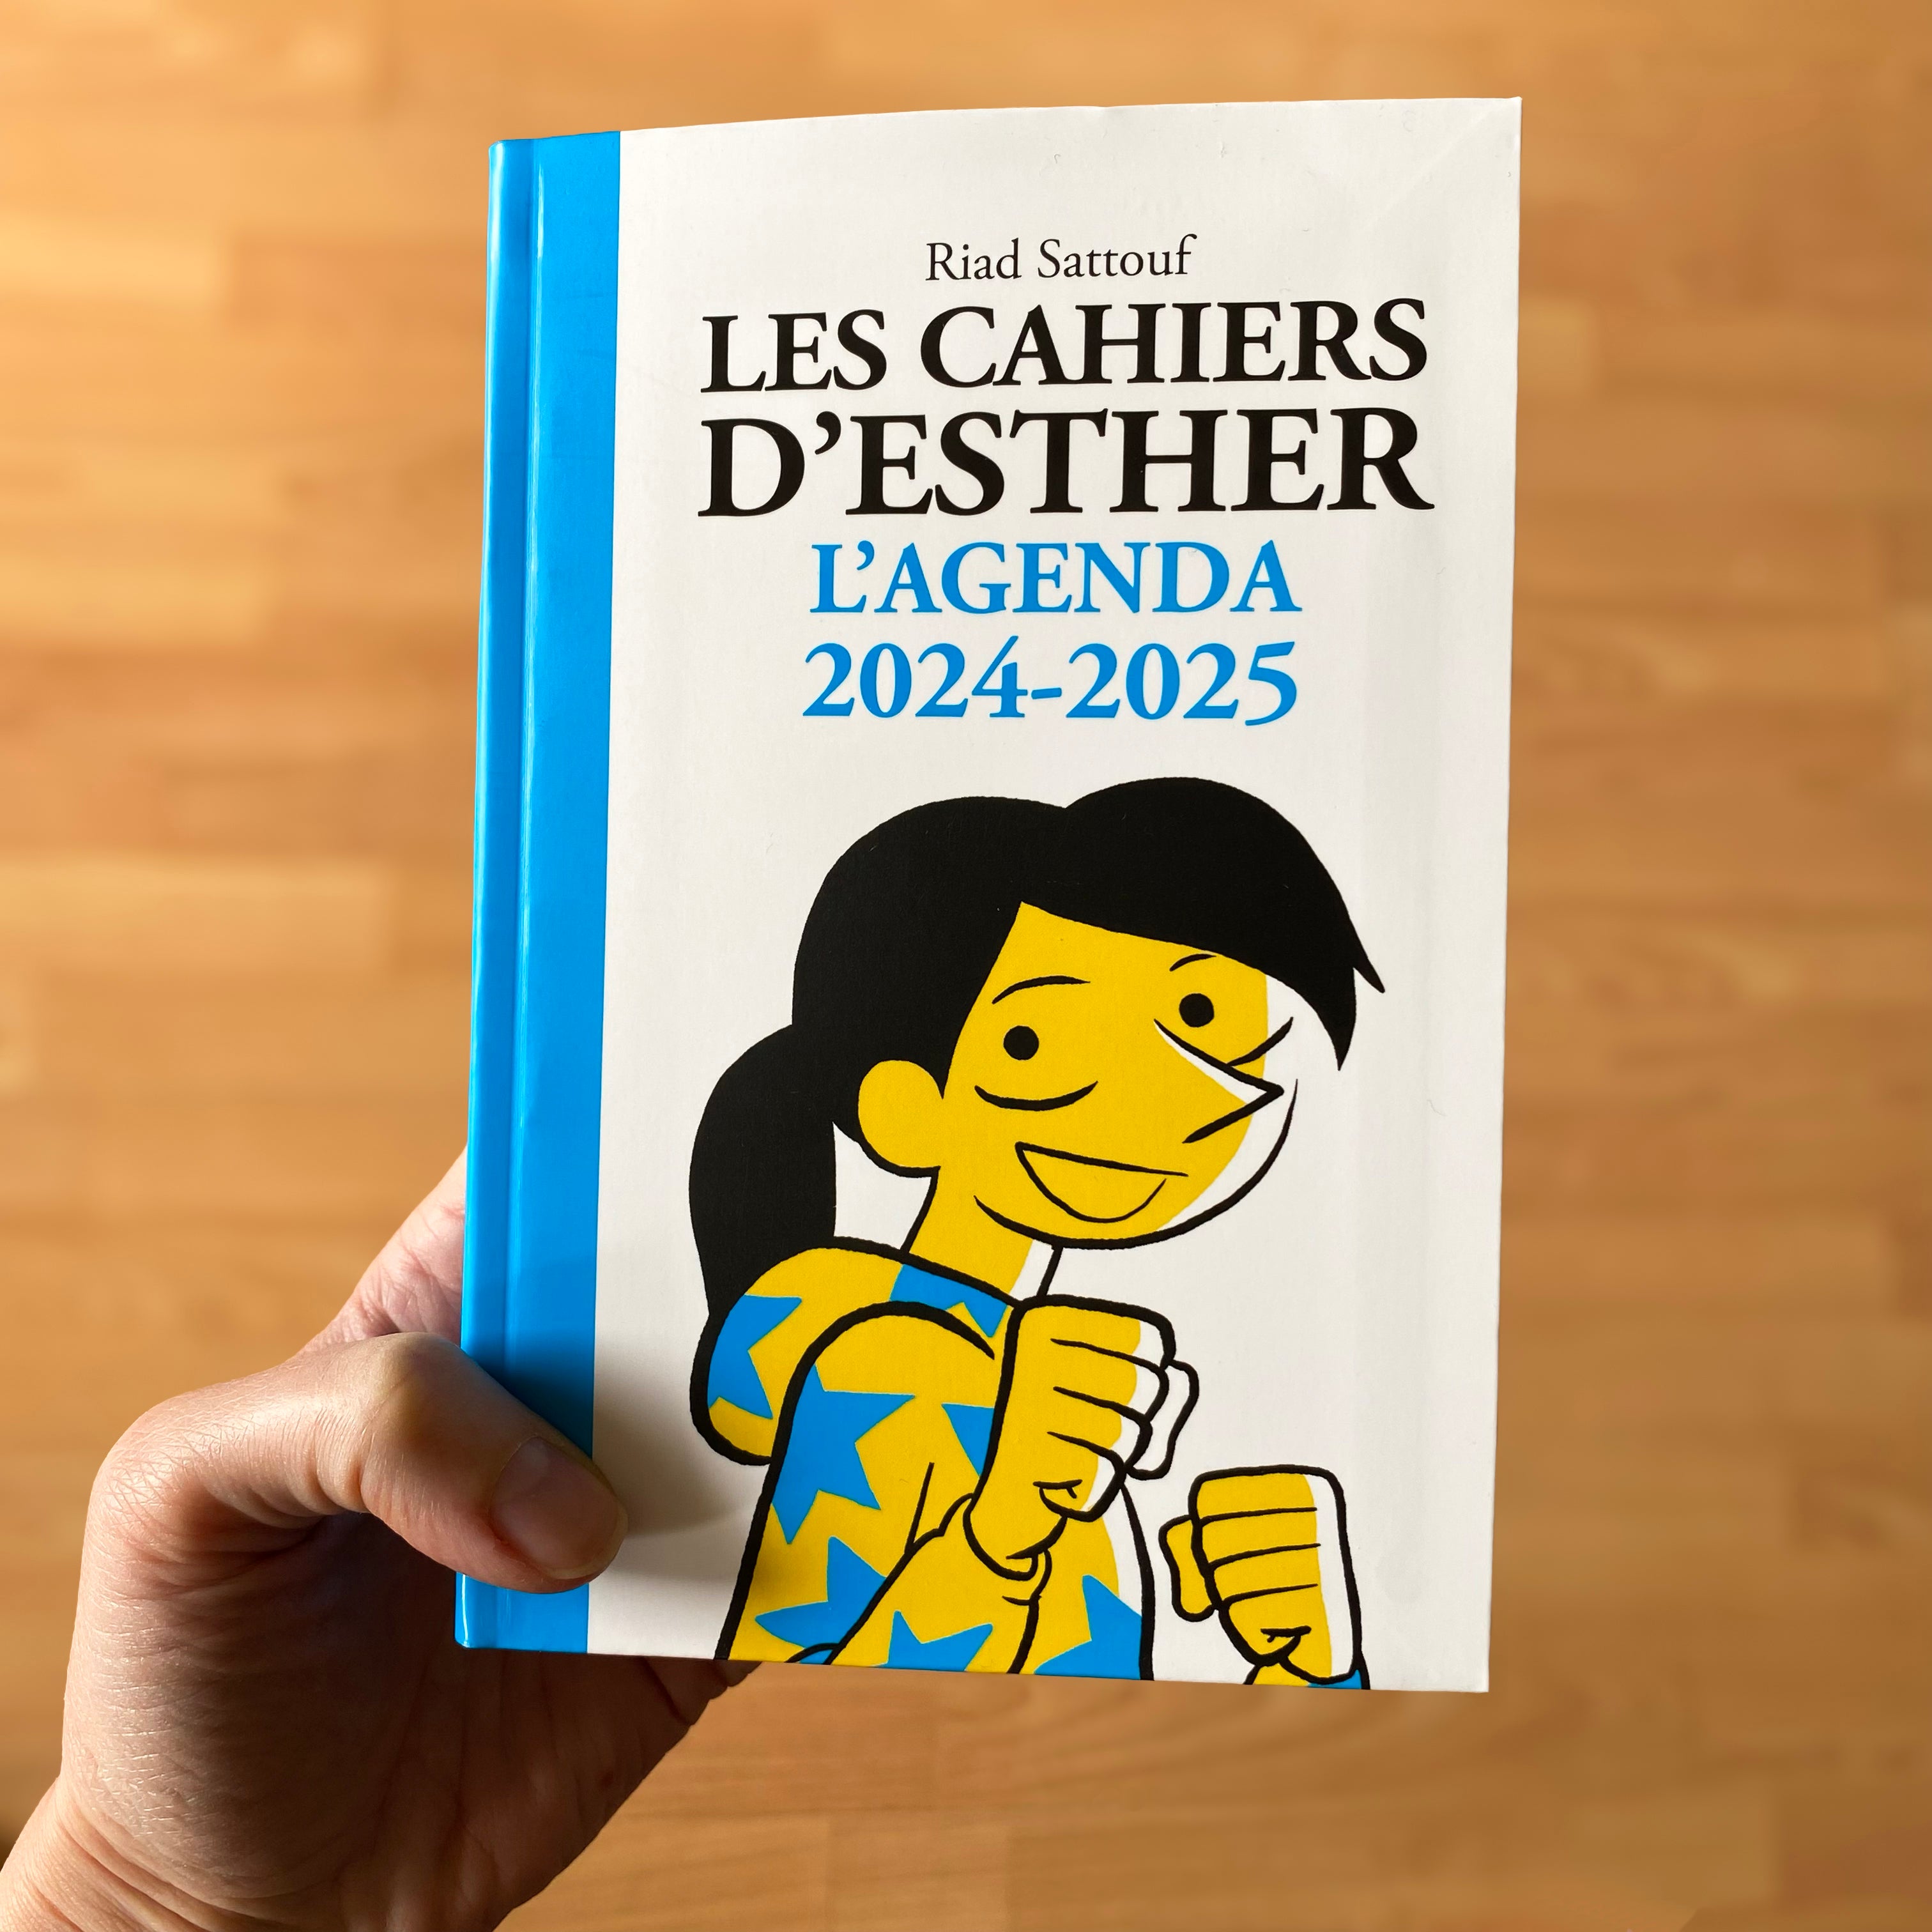 Nouvel agenda <br> "Les Cahiers d'Esther" 2024-2025 !